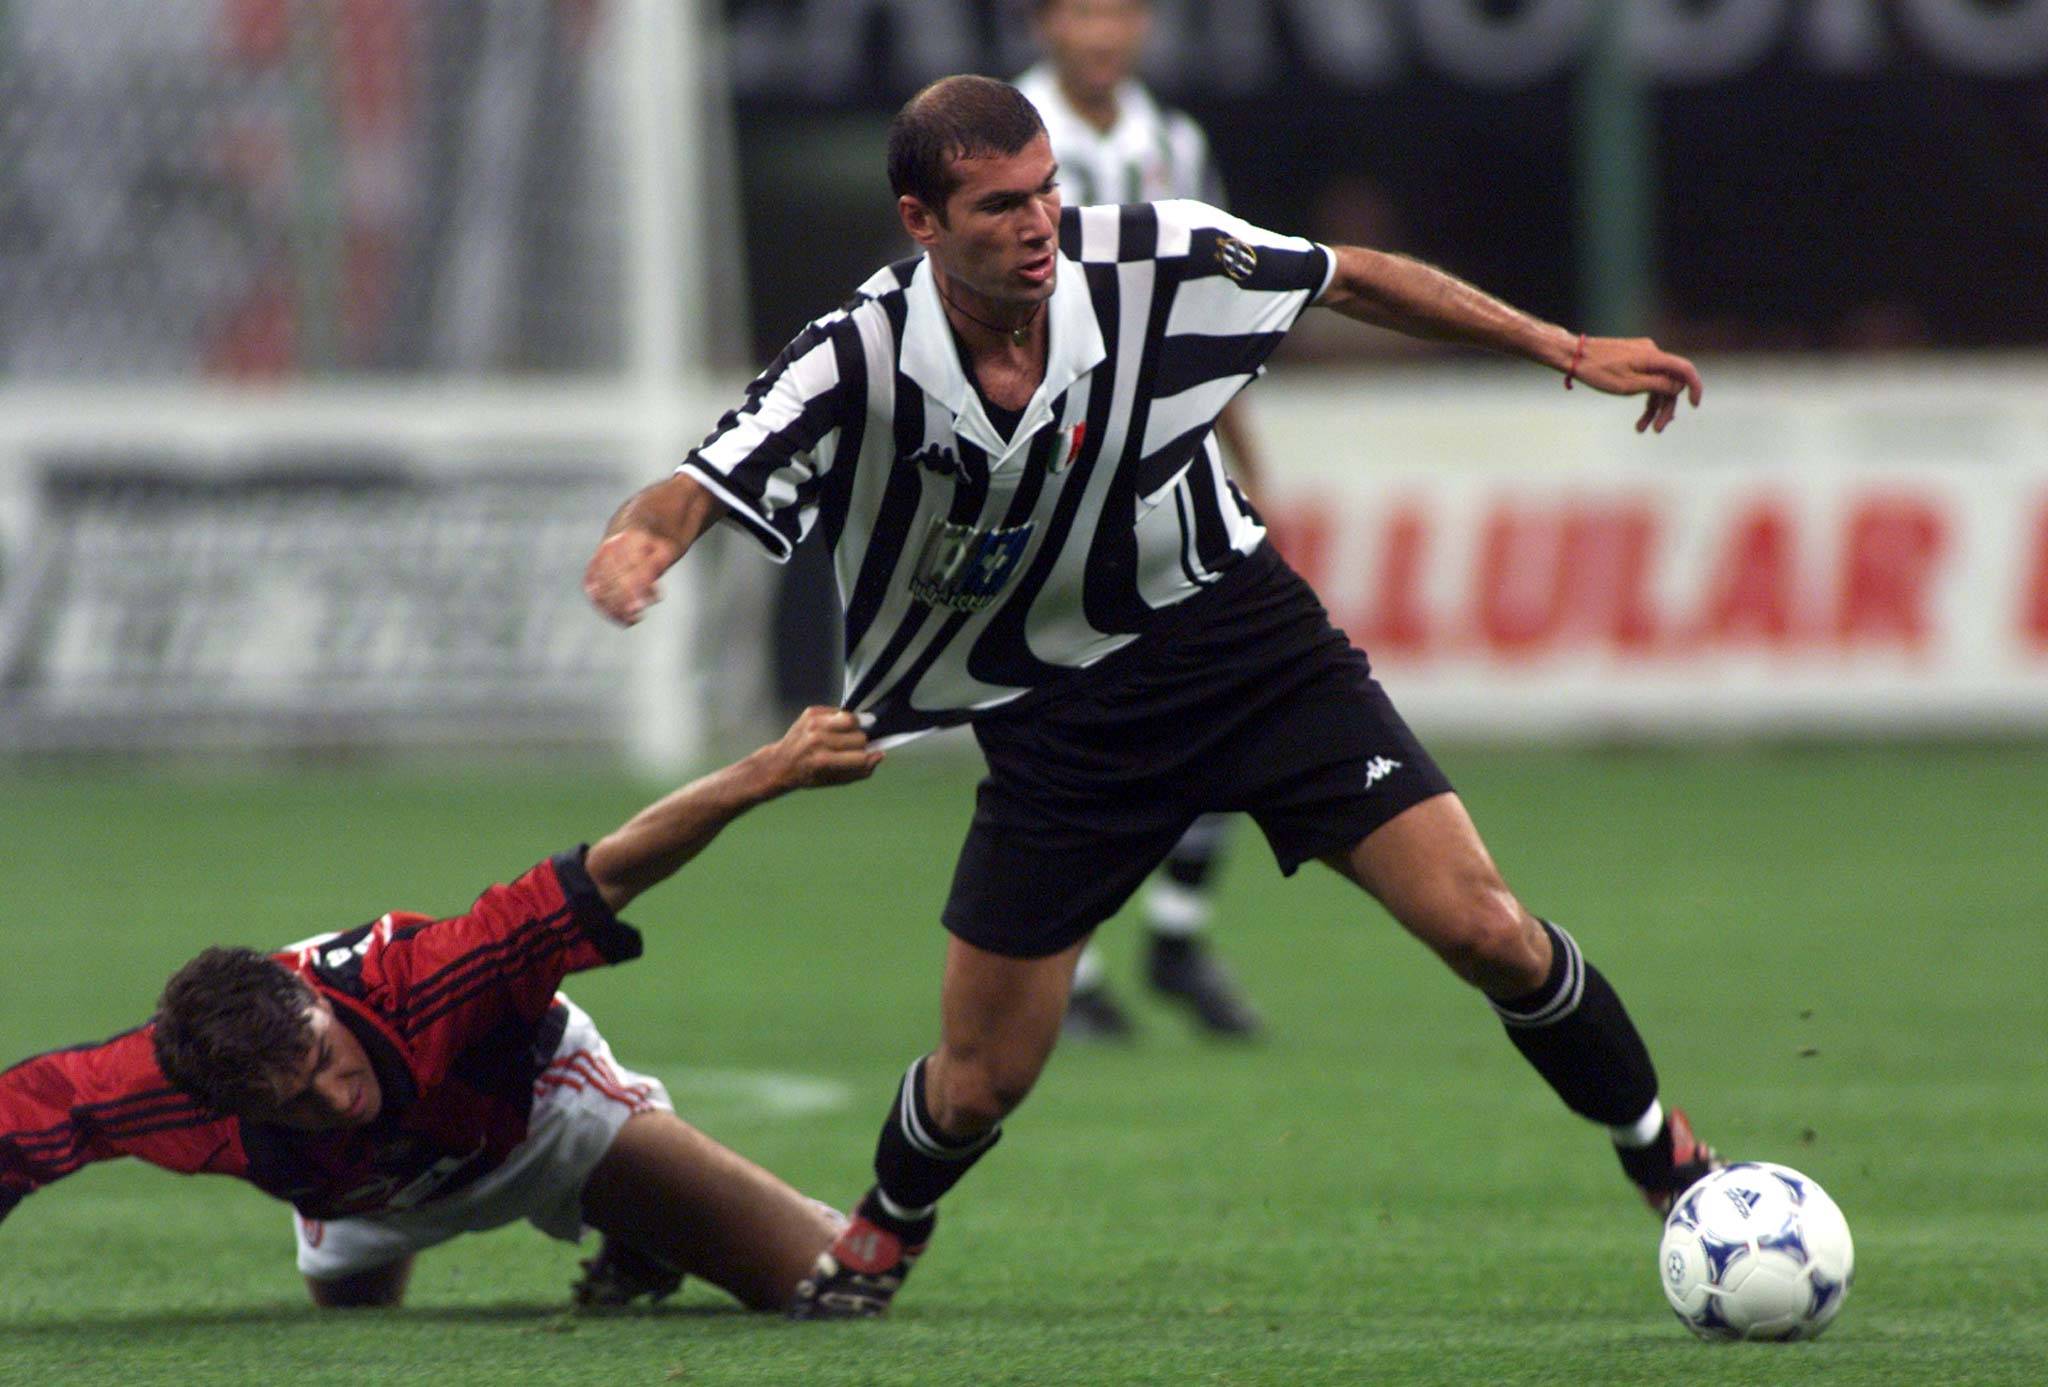 Juventus legend Zinedine Zidane playing against AC Milan